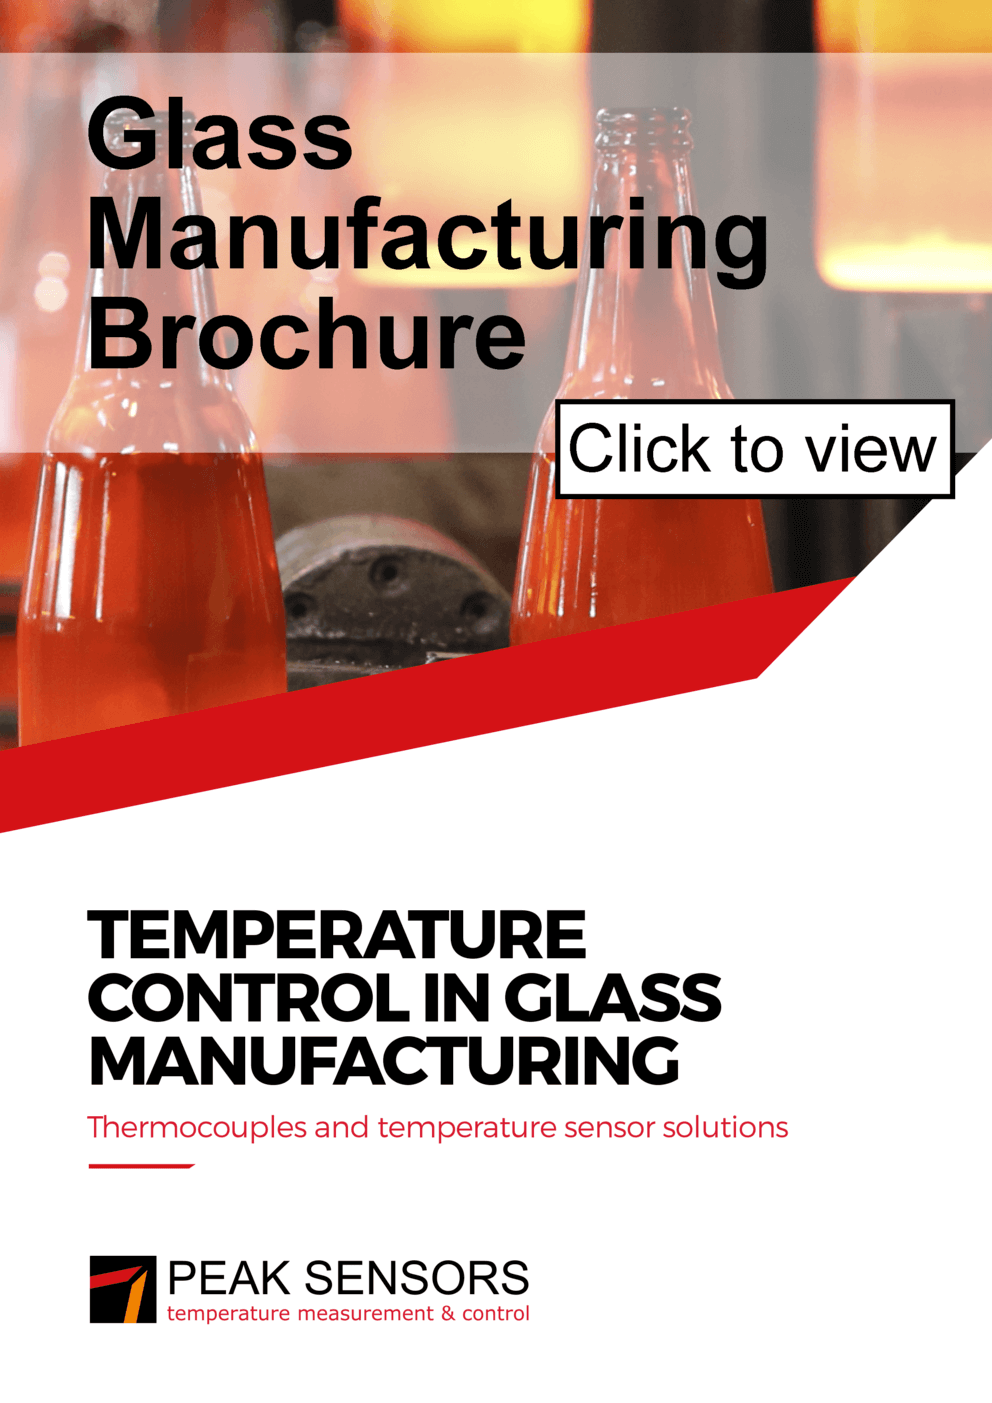 Glass Manufactuing Brochure - Temperature Control In Glass Manufacturing